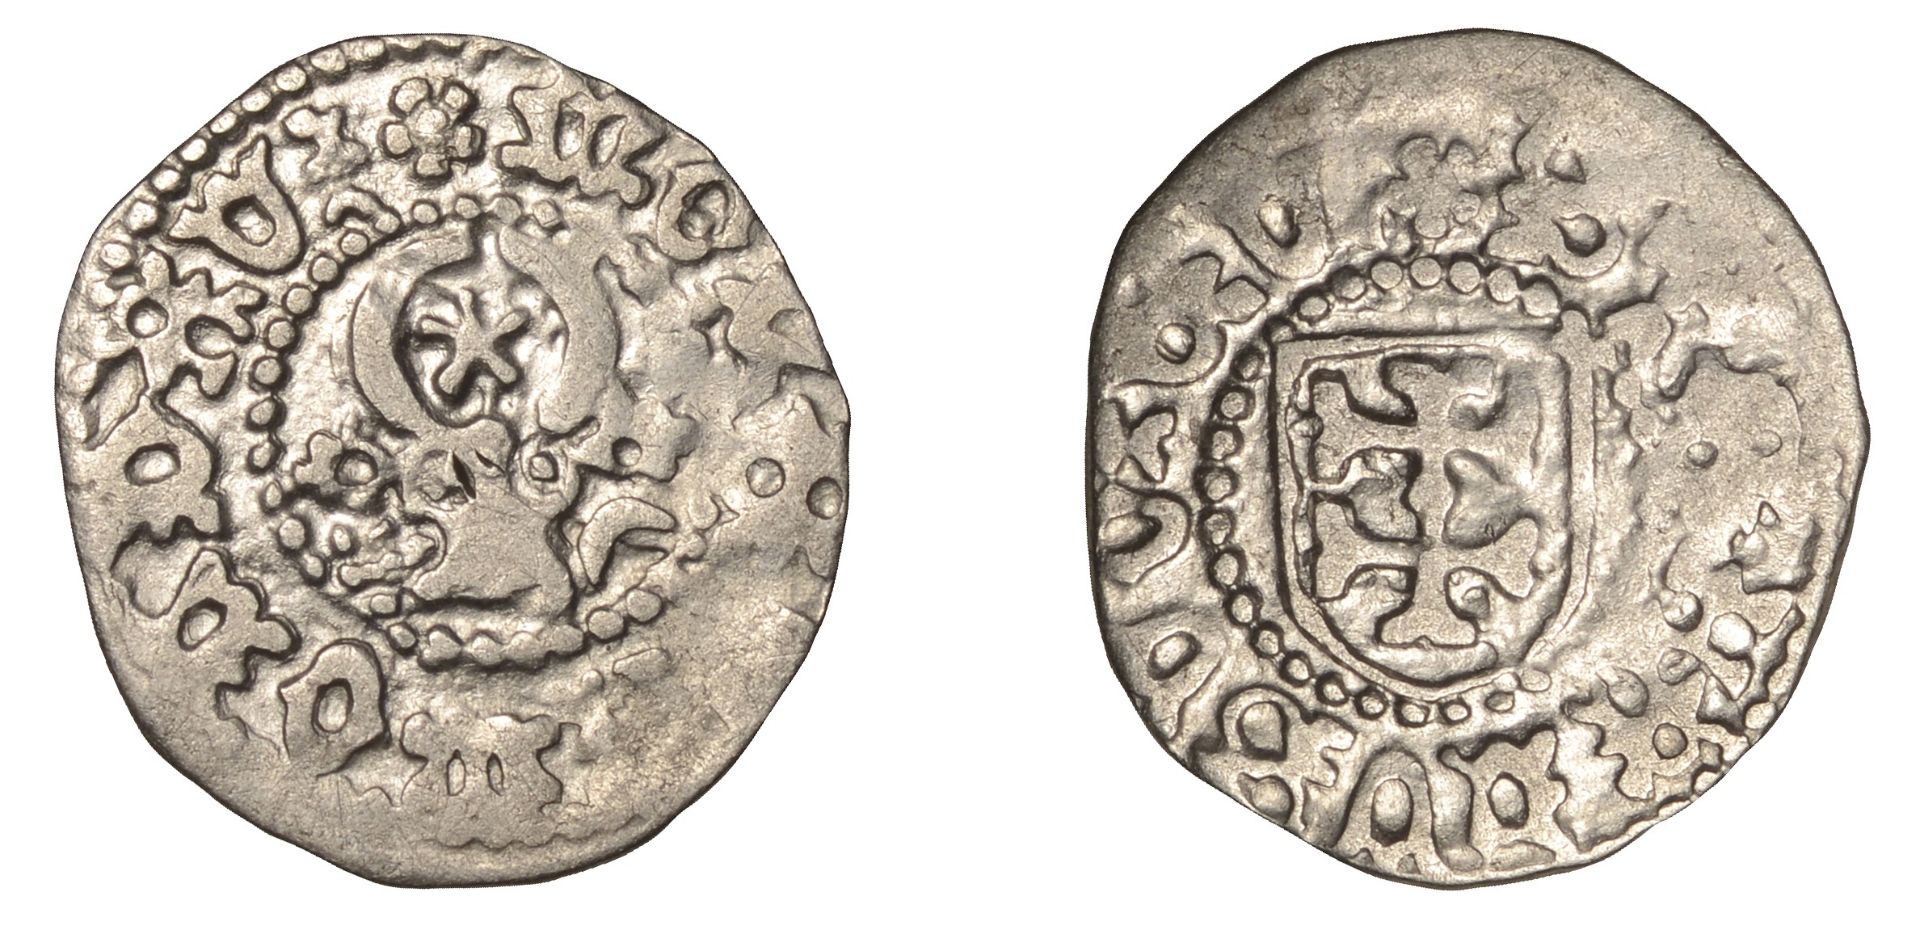 Romania, MOLDAVIA, Stefan cel Mare (1457-1504), Gros, type IIa, moneta moldavi, rev. stefanv...